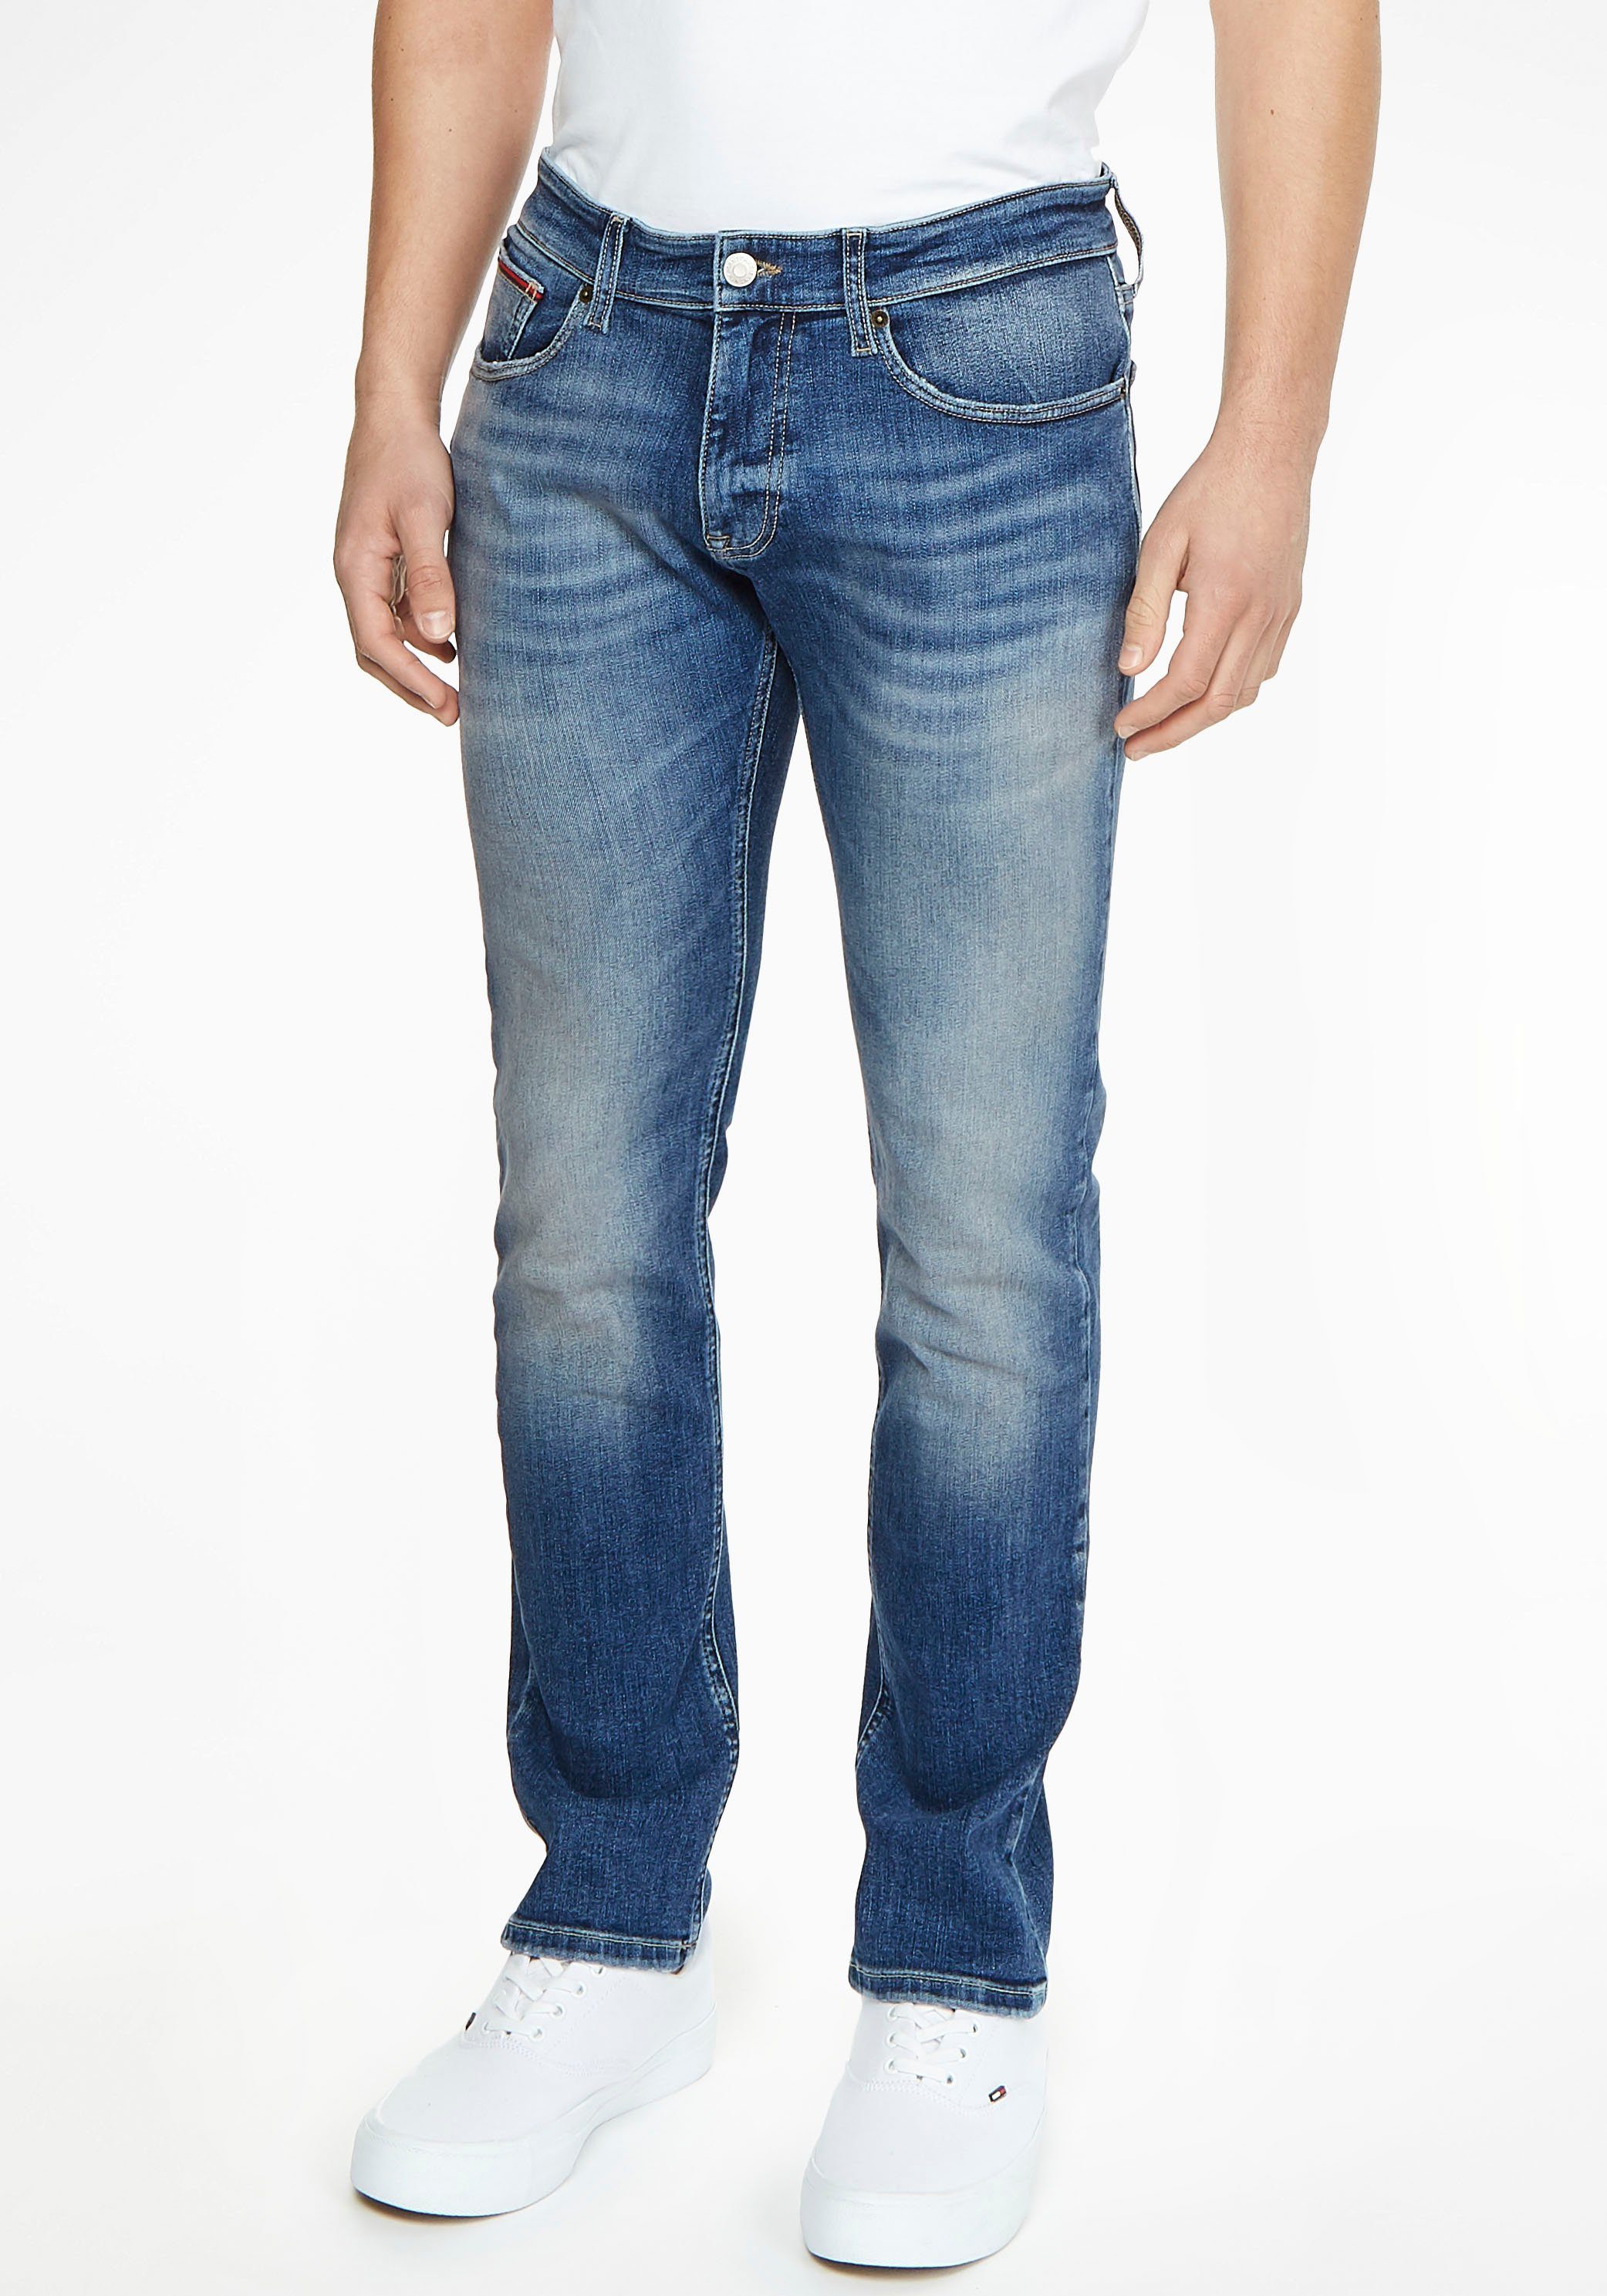 Tommy Hilfiger Jeans Herren online kaufen | OTTO